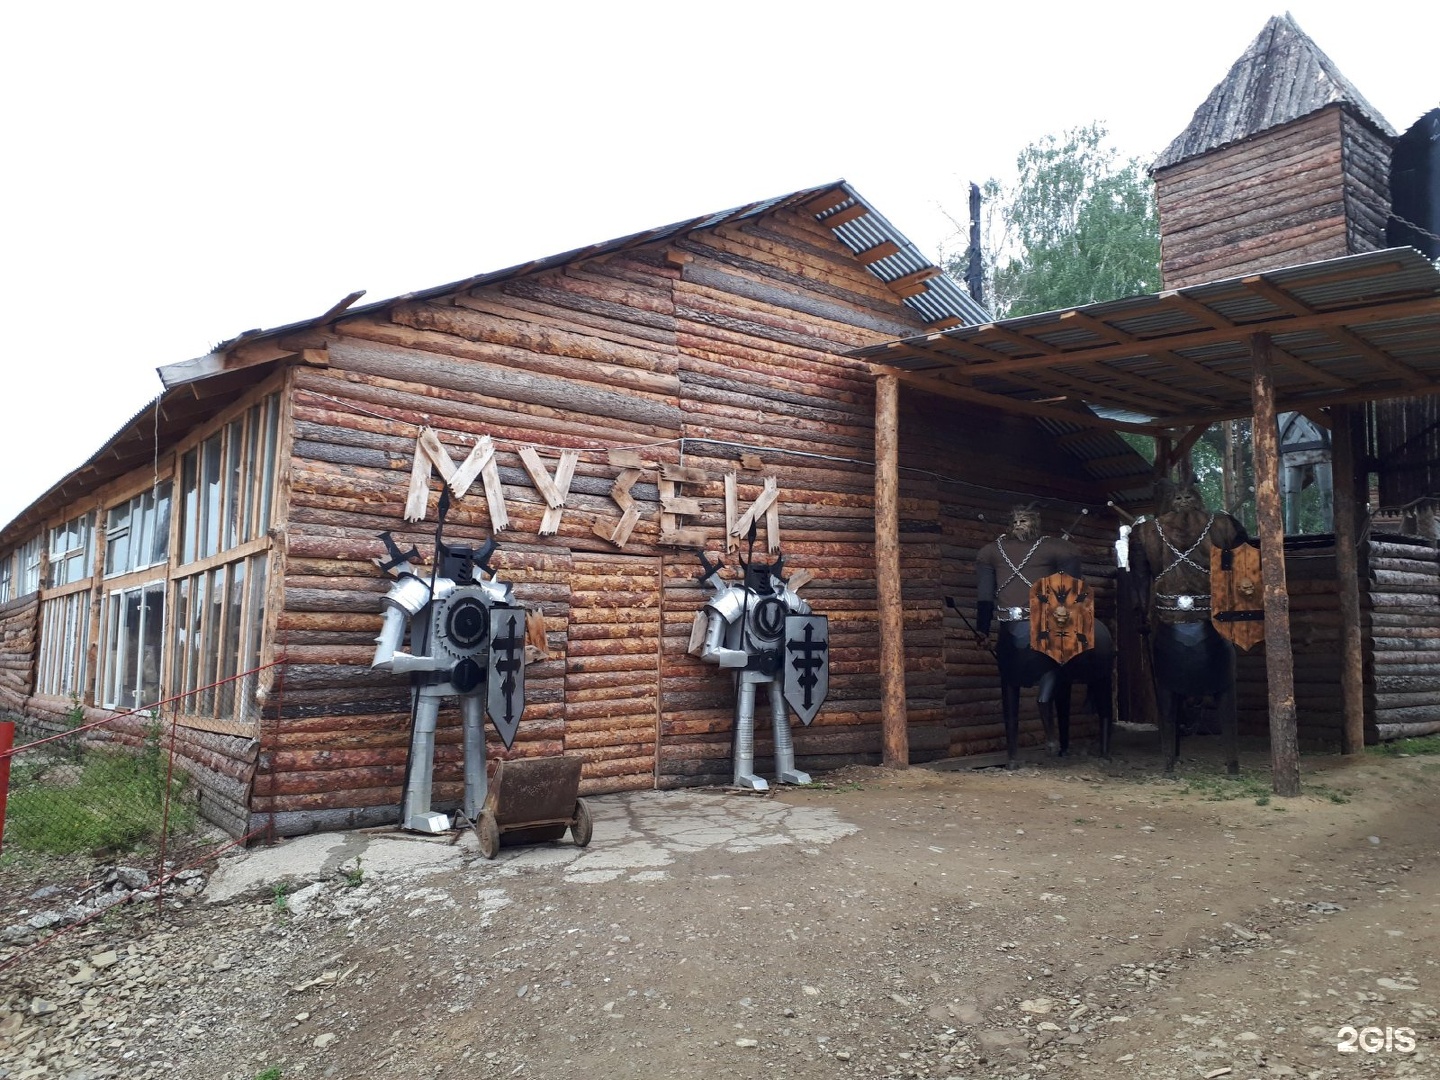 музей мусора в иркутске